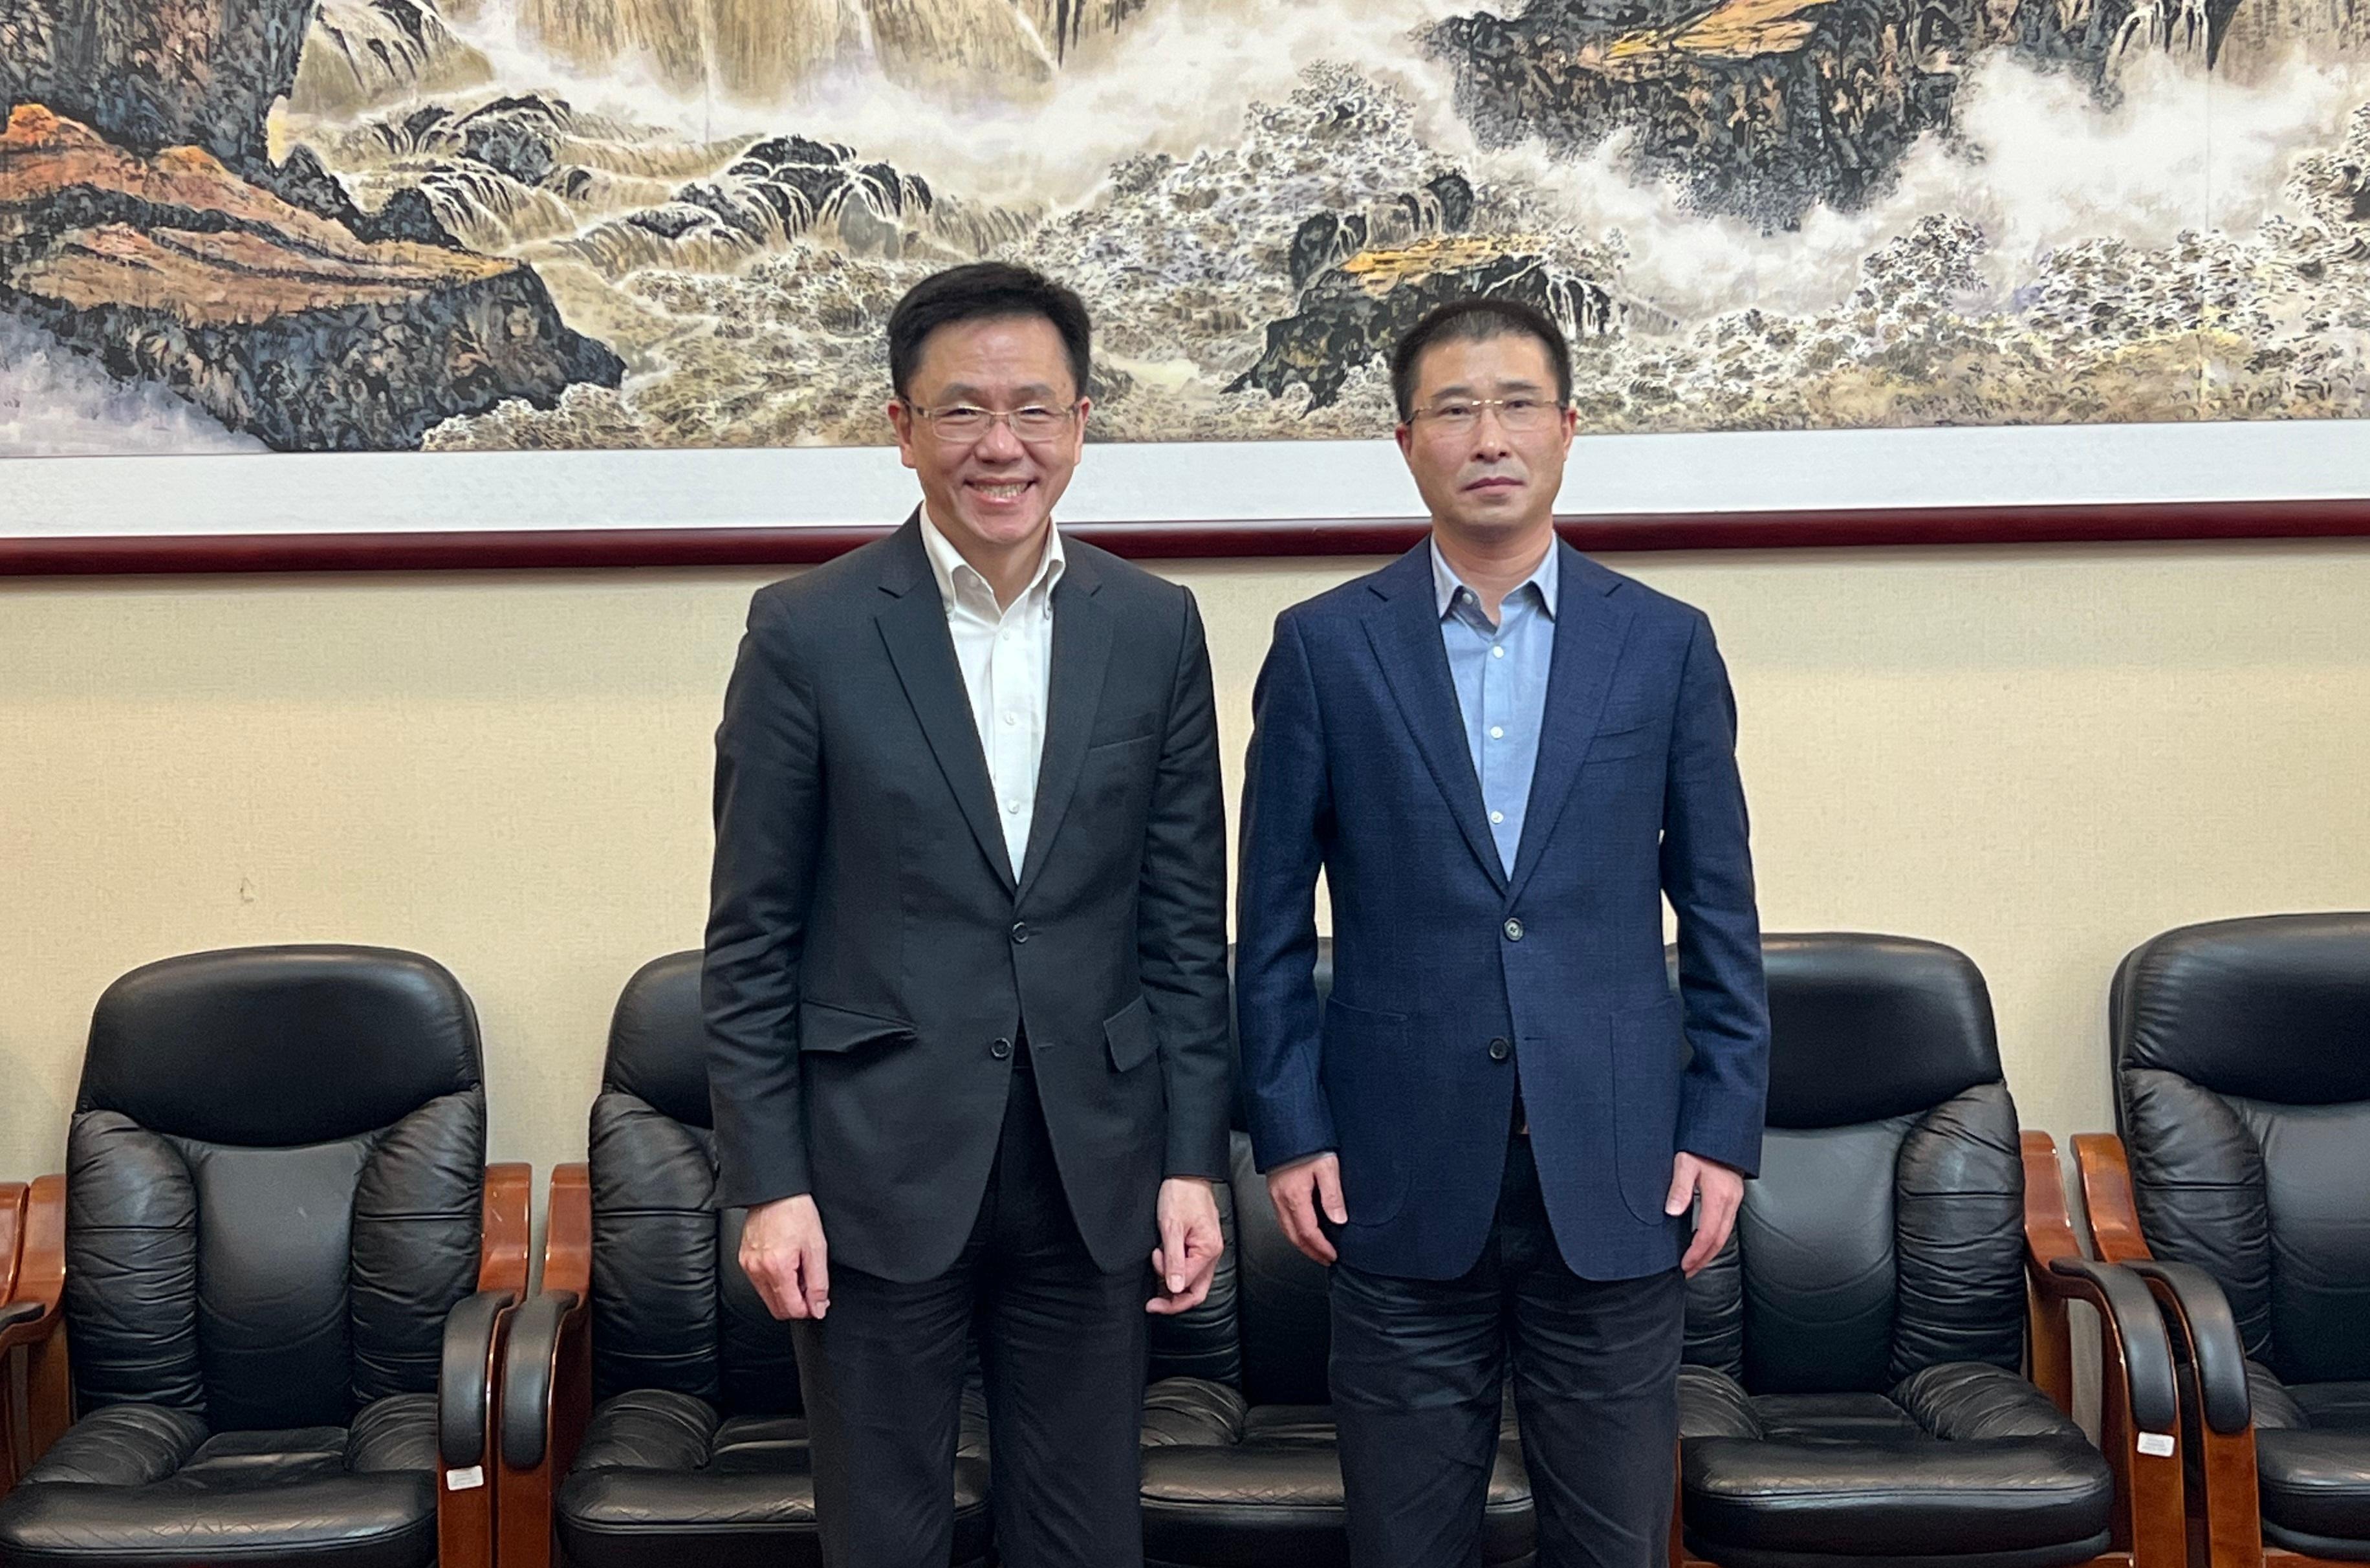 創新科技及工業局局長孫東教授（左）今日（一月十七日）在北京拜會科學技術部副部長張廣軍教授（右），就如何進一步推動香港融入國家科技發展大局等議題交換意見。